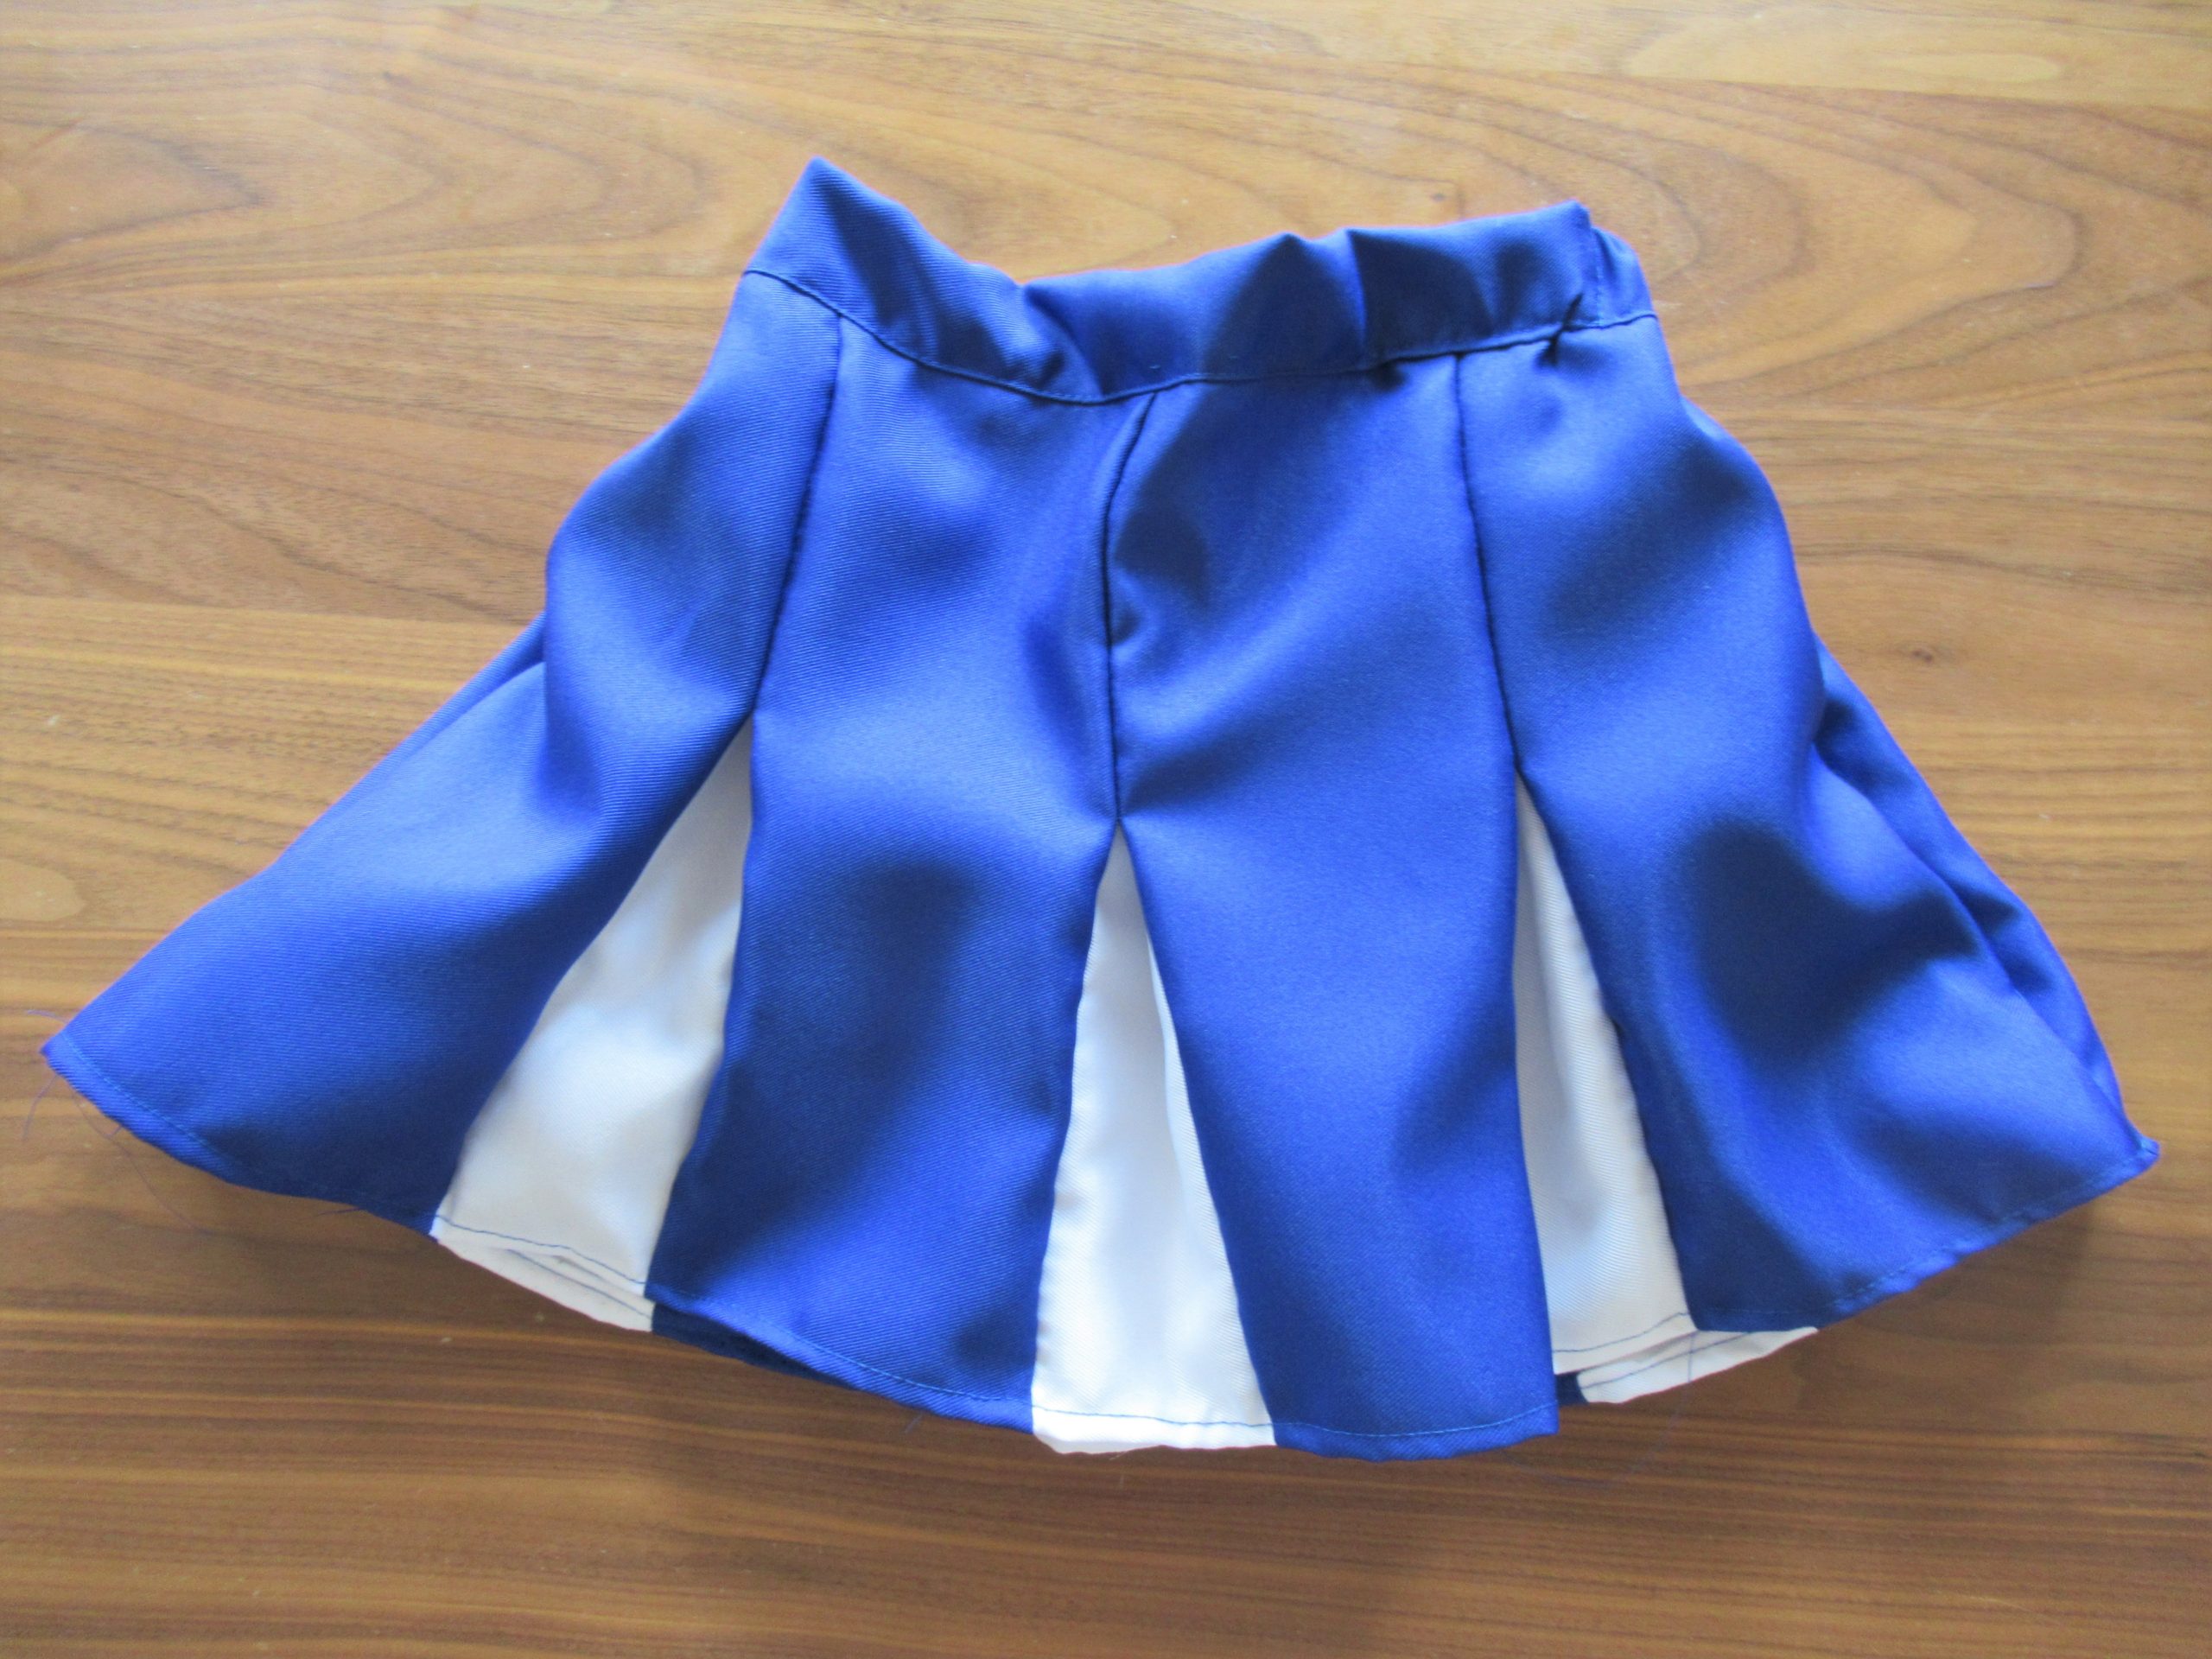 【チアのスカート簡単作り方】ゴム仕様で2色カラーのボックスプリーツの簡単な作り方